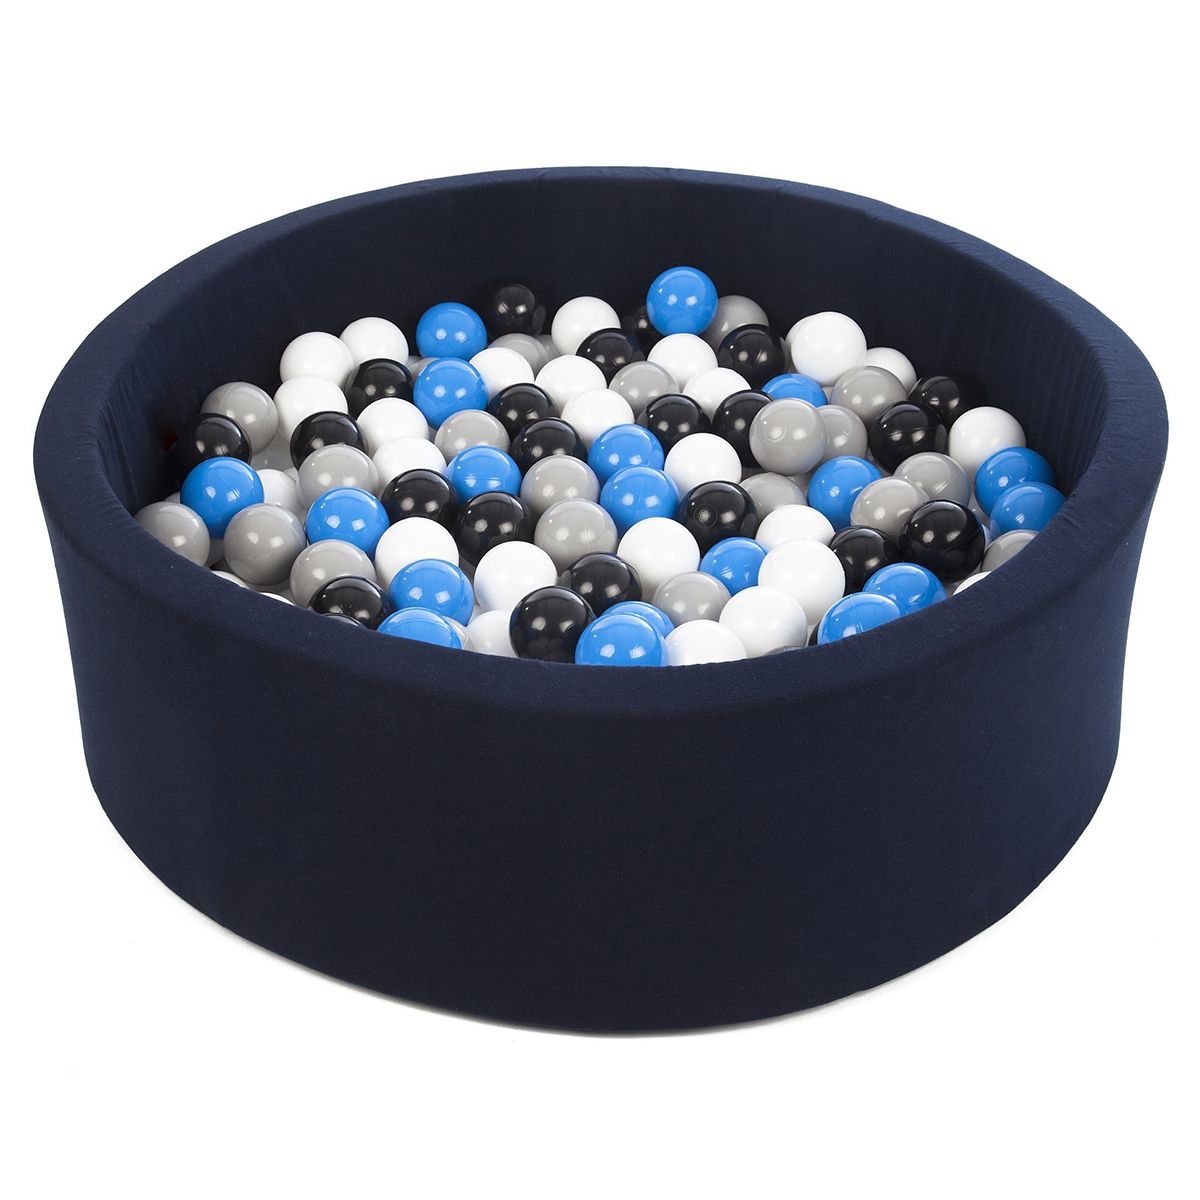  Piscine à balles Aire de jeu + 200 balles bleu marine noir,blanc,bleu,gris